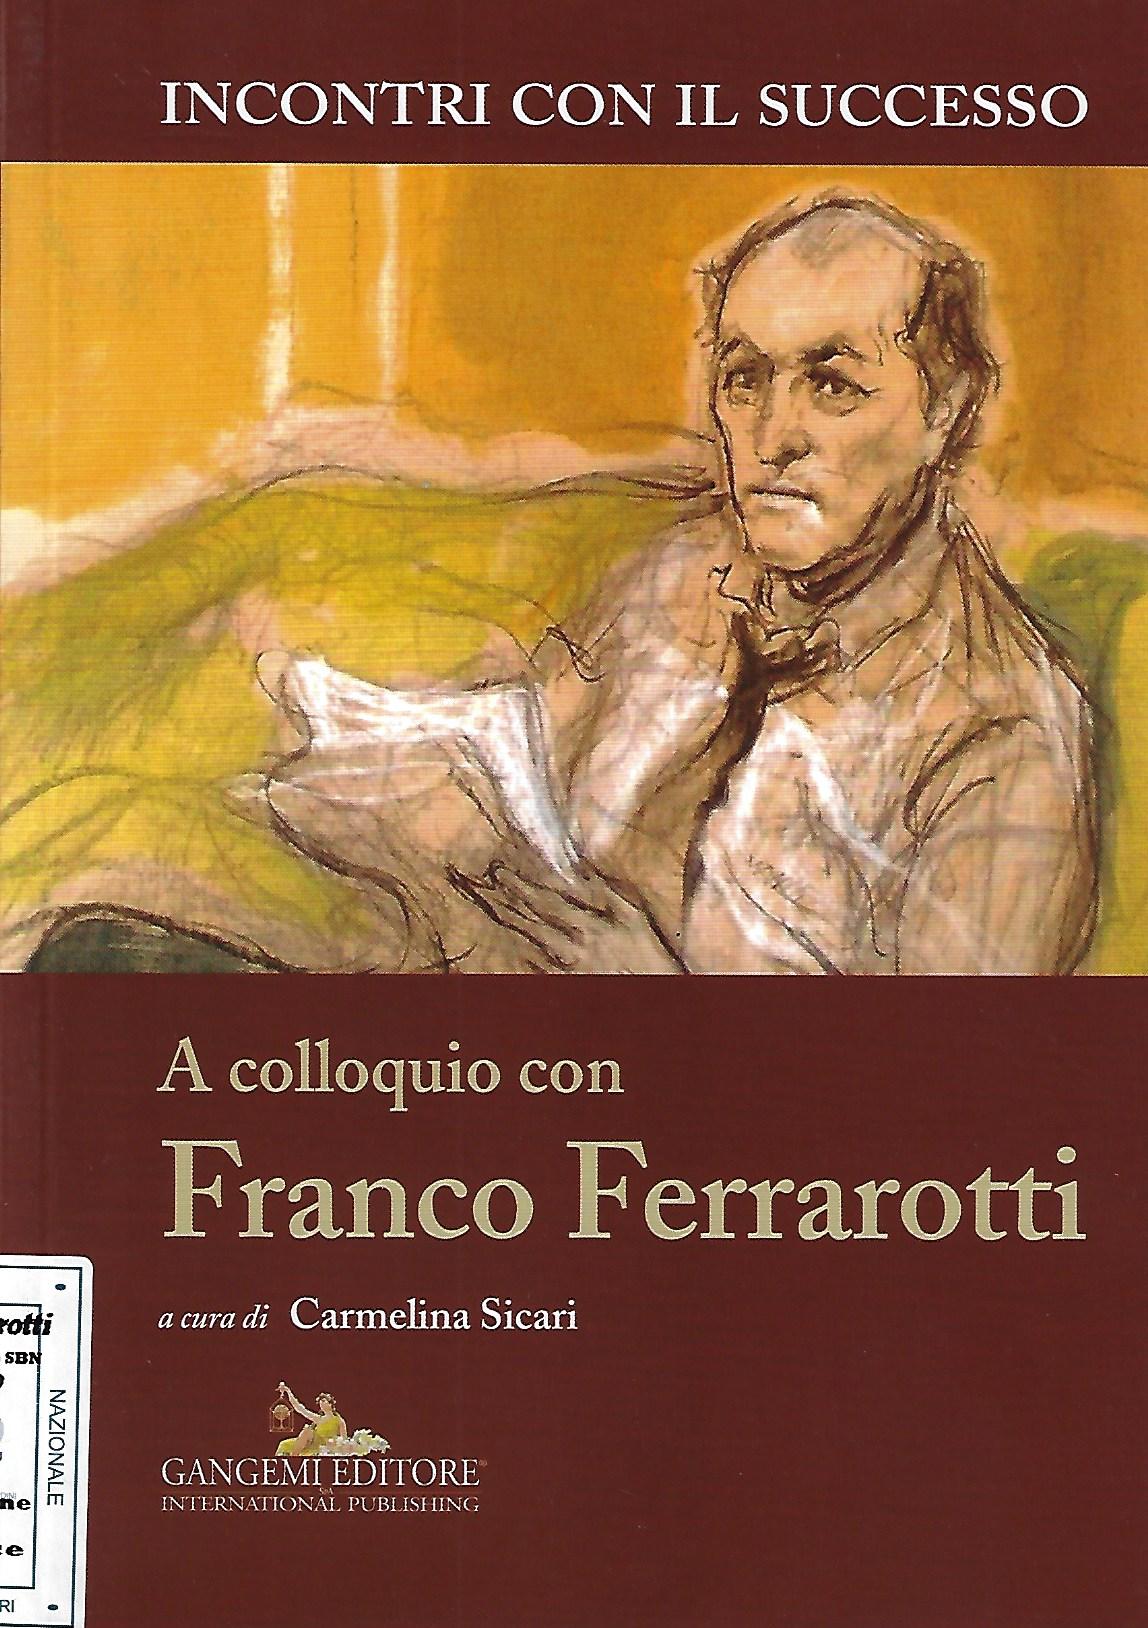 A colloquio con Franco Ferrarotti